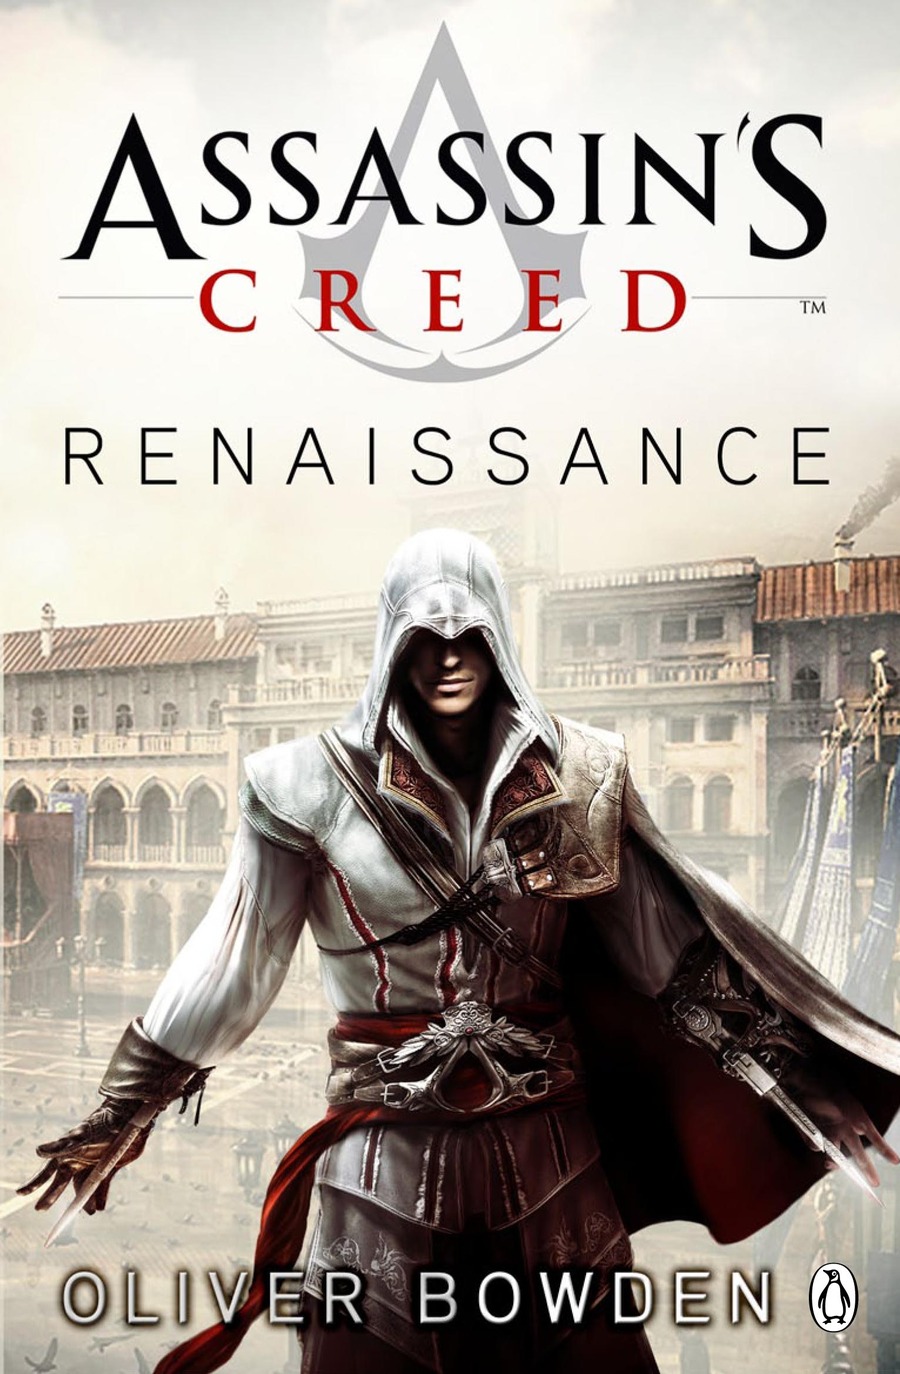 Assassins-creed-renaissance-137545308312681